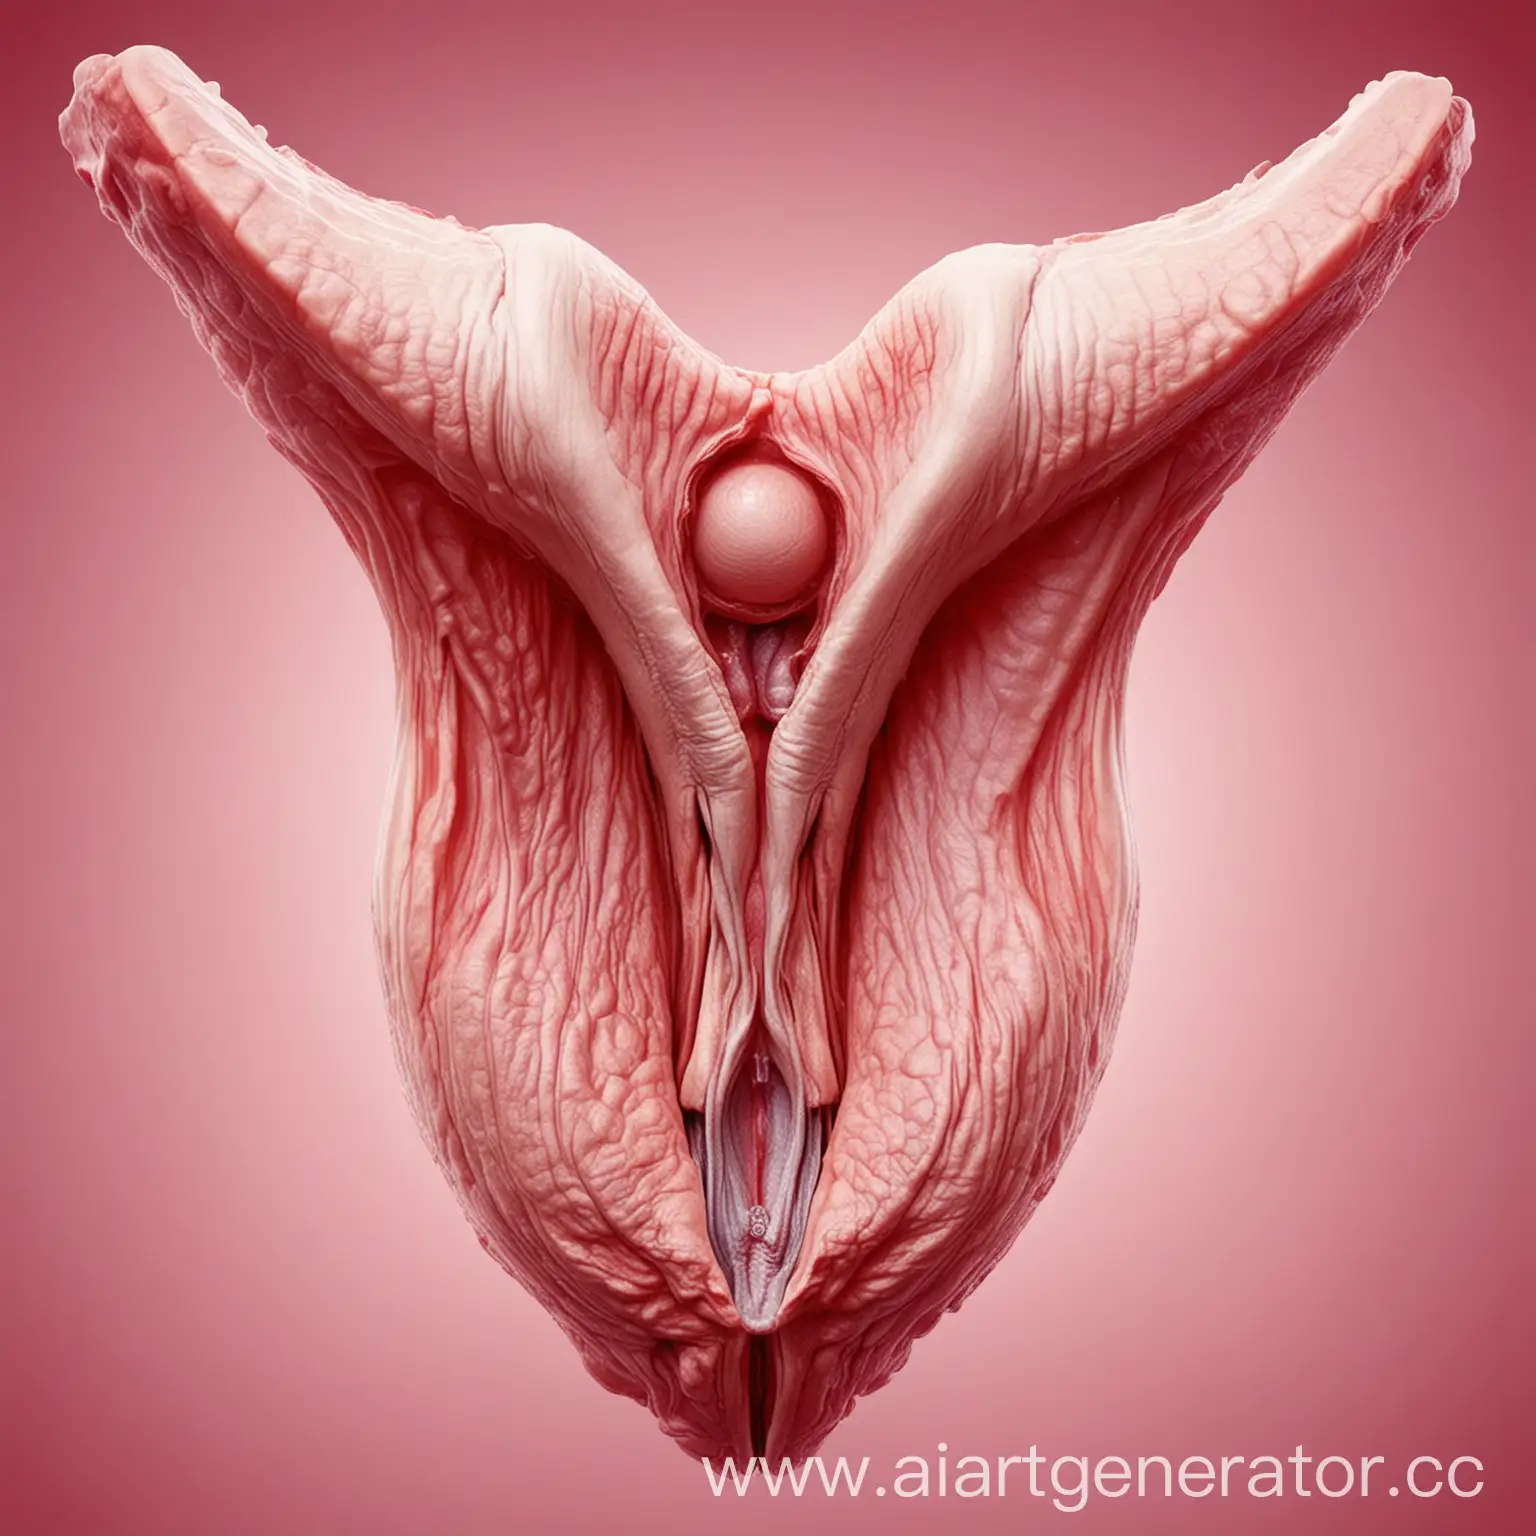 Elegant-Representation-of-the-Female-Uterus-in-Art